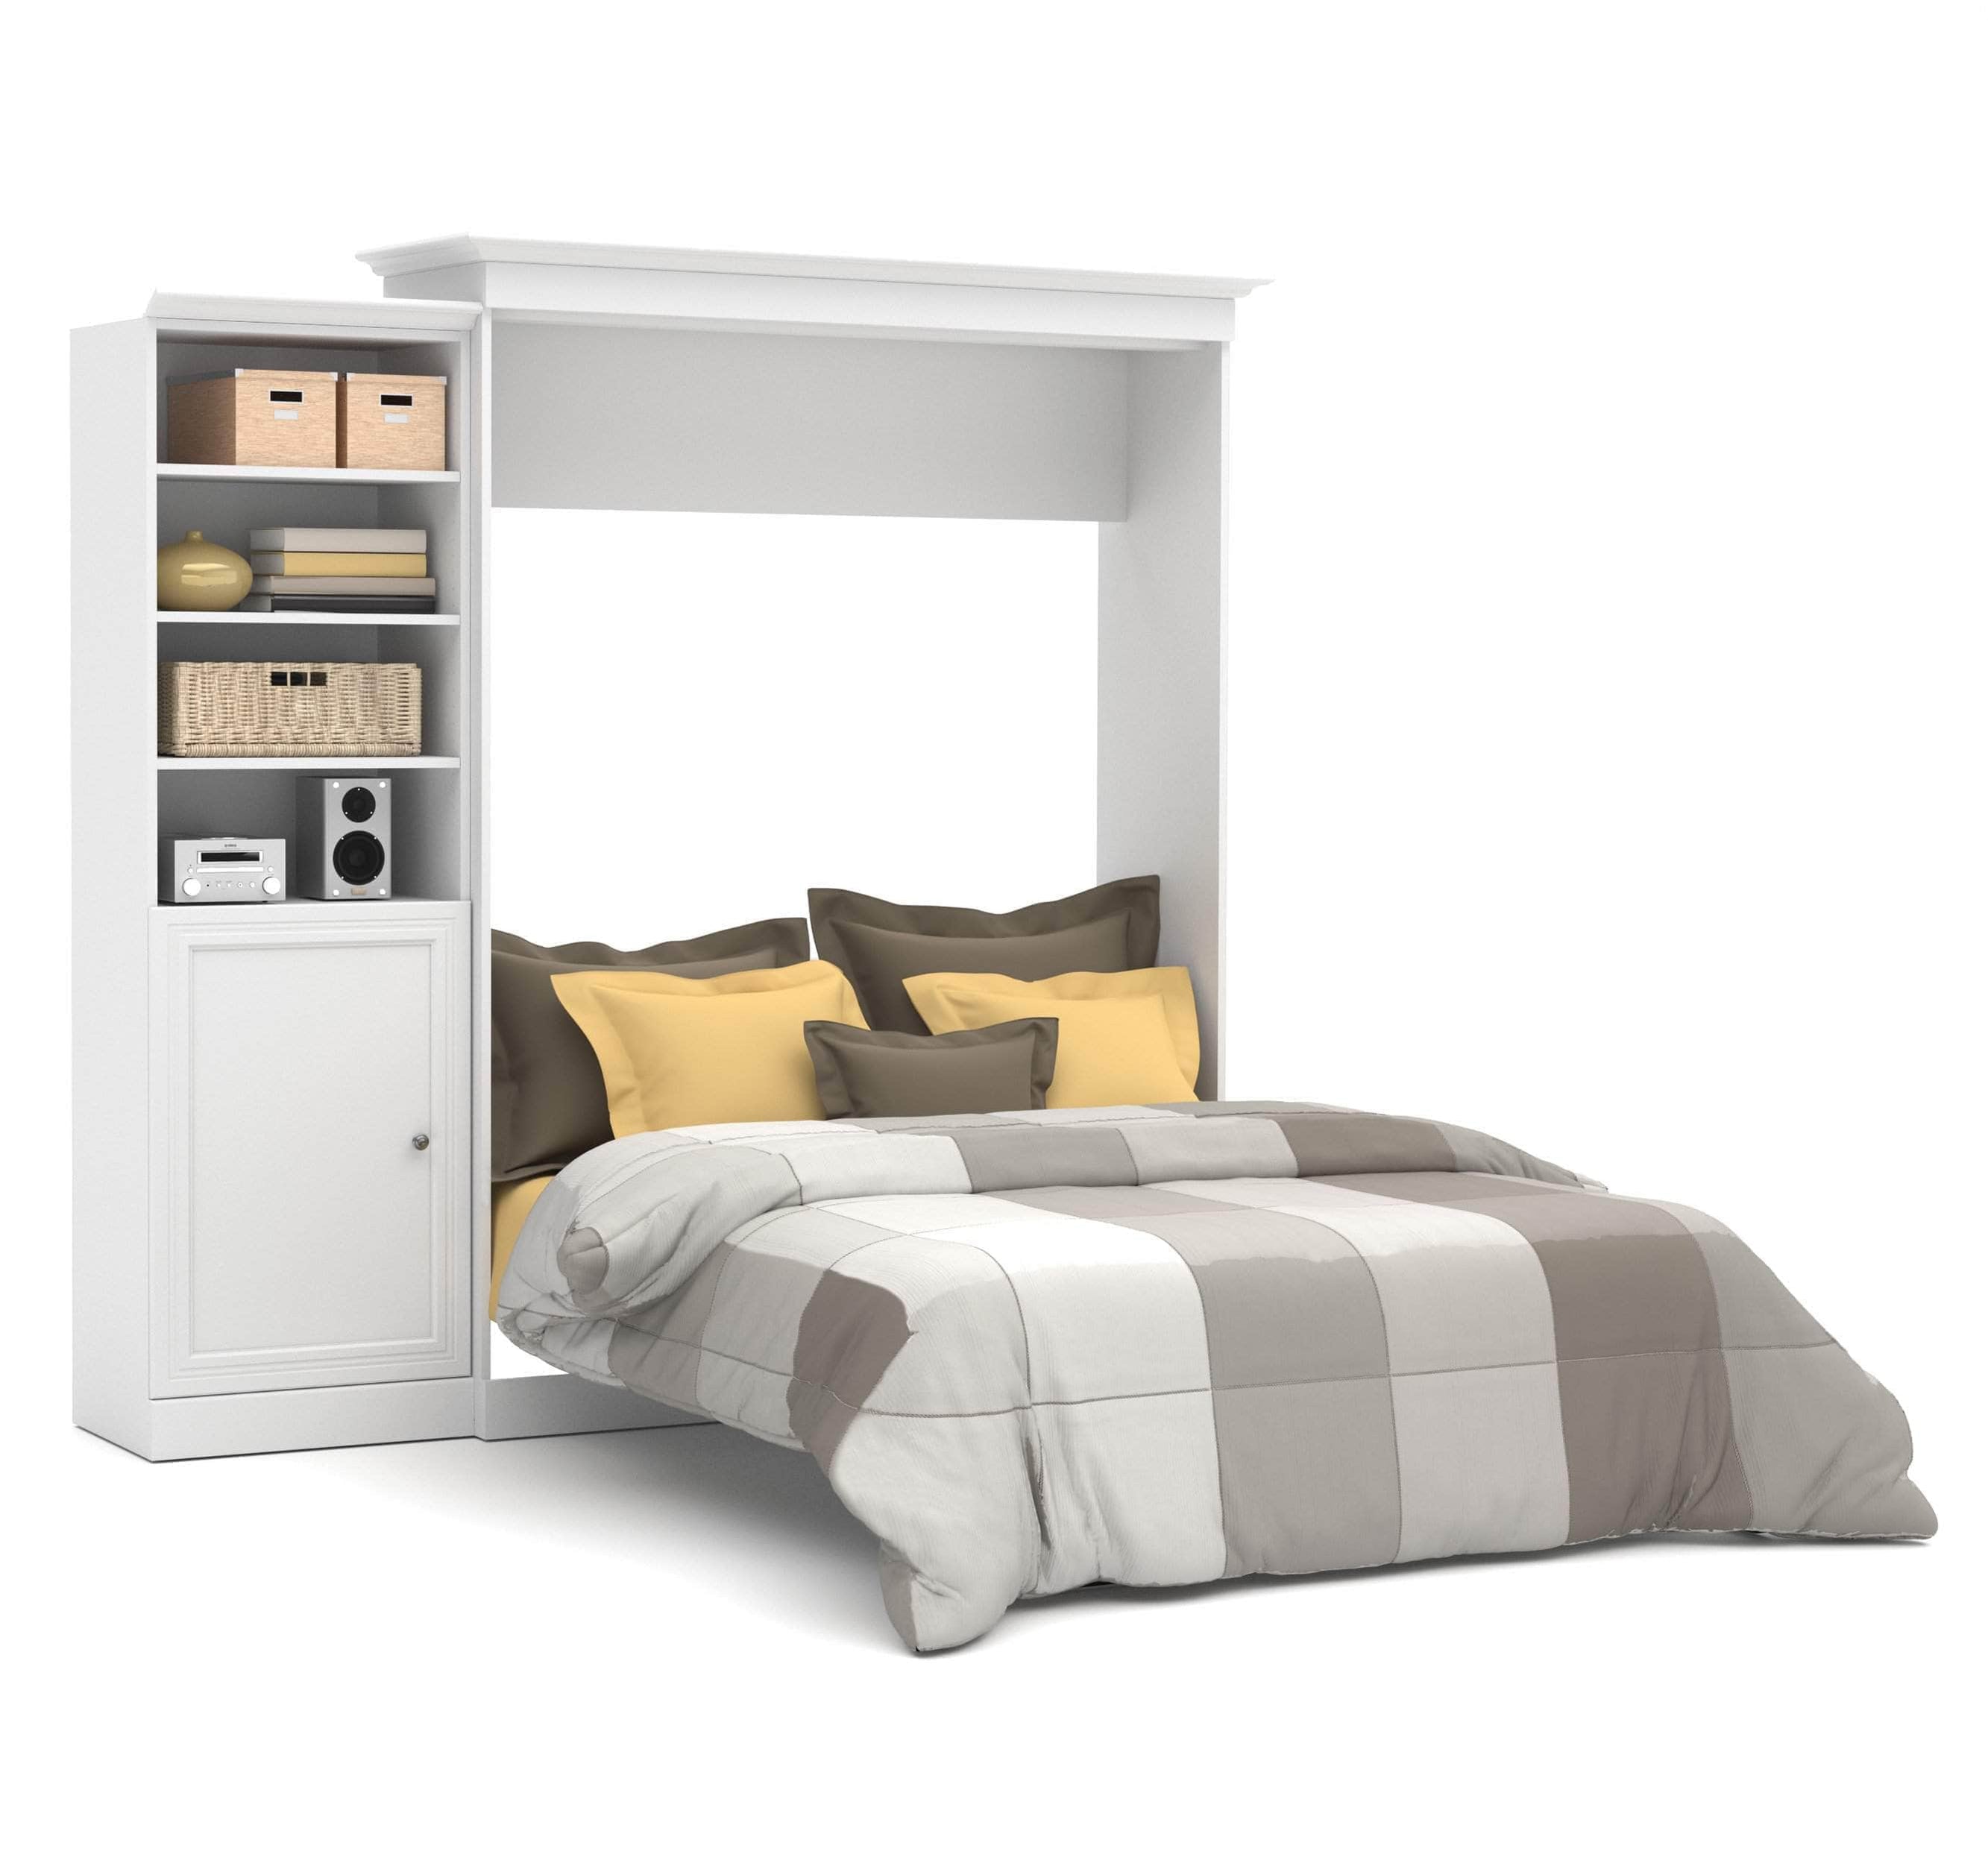 Modubox Versatile Queen Murphy Wall Bed and 1 Storage Unit with Door ...